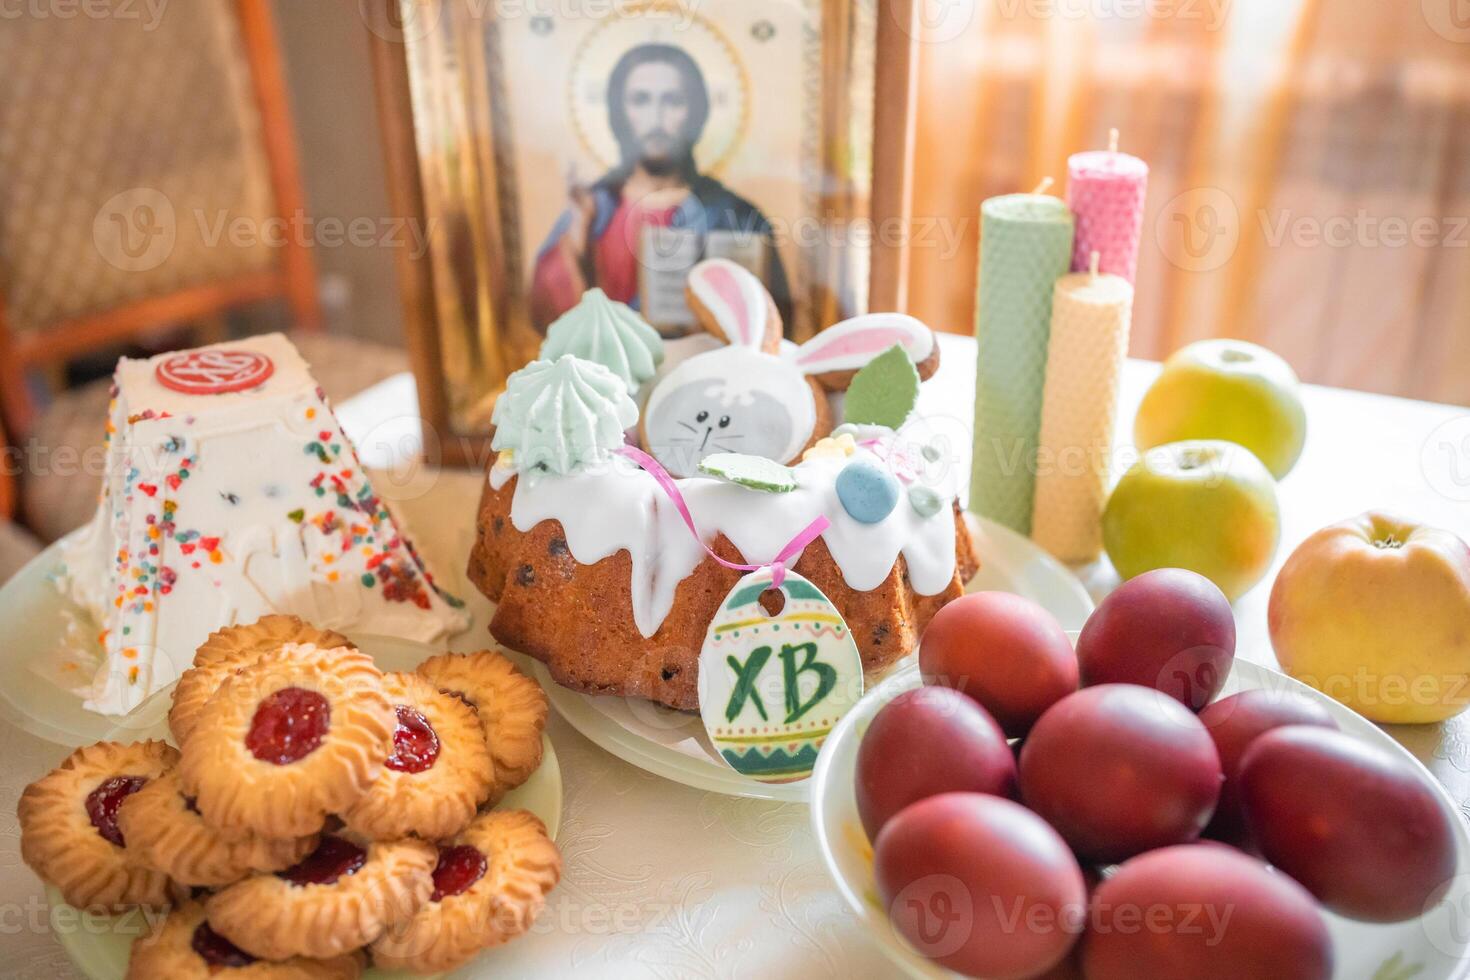 påsk kaka med målad ägg, äpplen och småkakor på tabell i Hem kök. kyrka ikoner och ljus på bakgrund. ortodox religion tema. foto